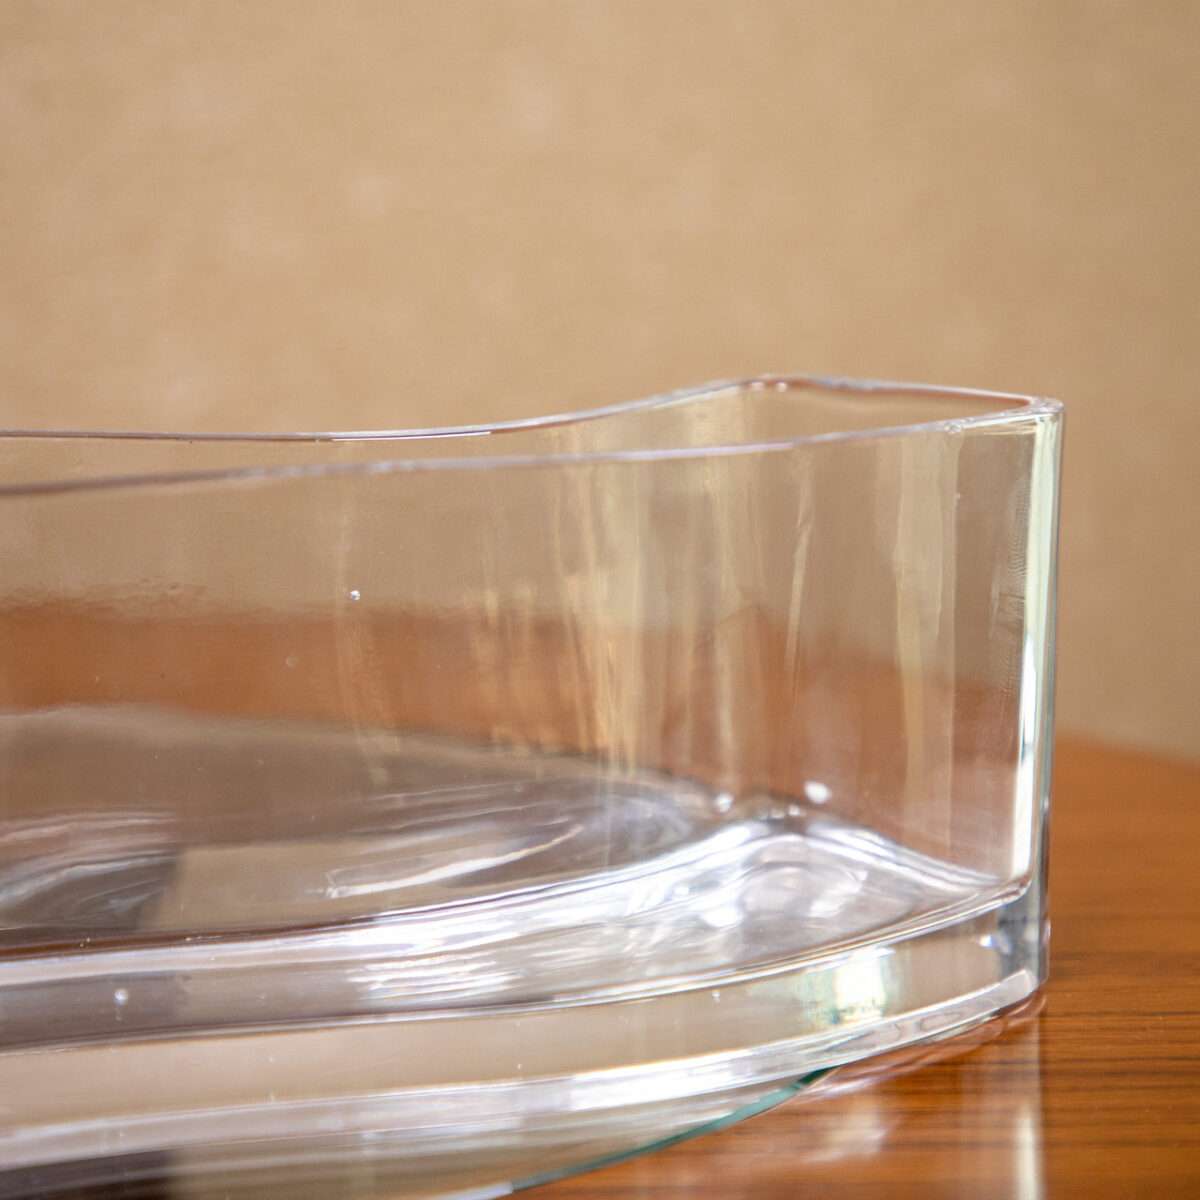 oblong-glass-vase-725520